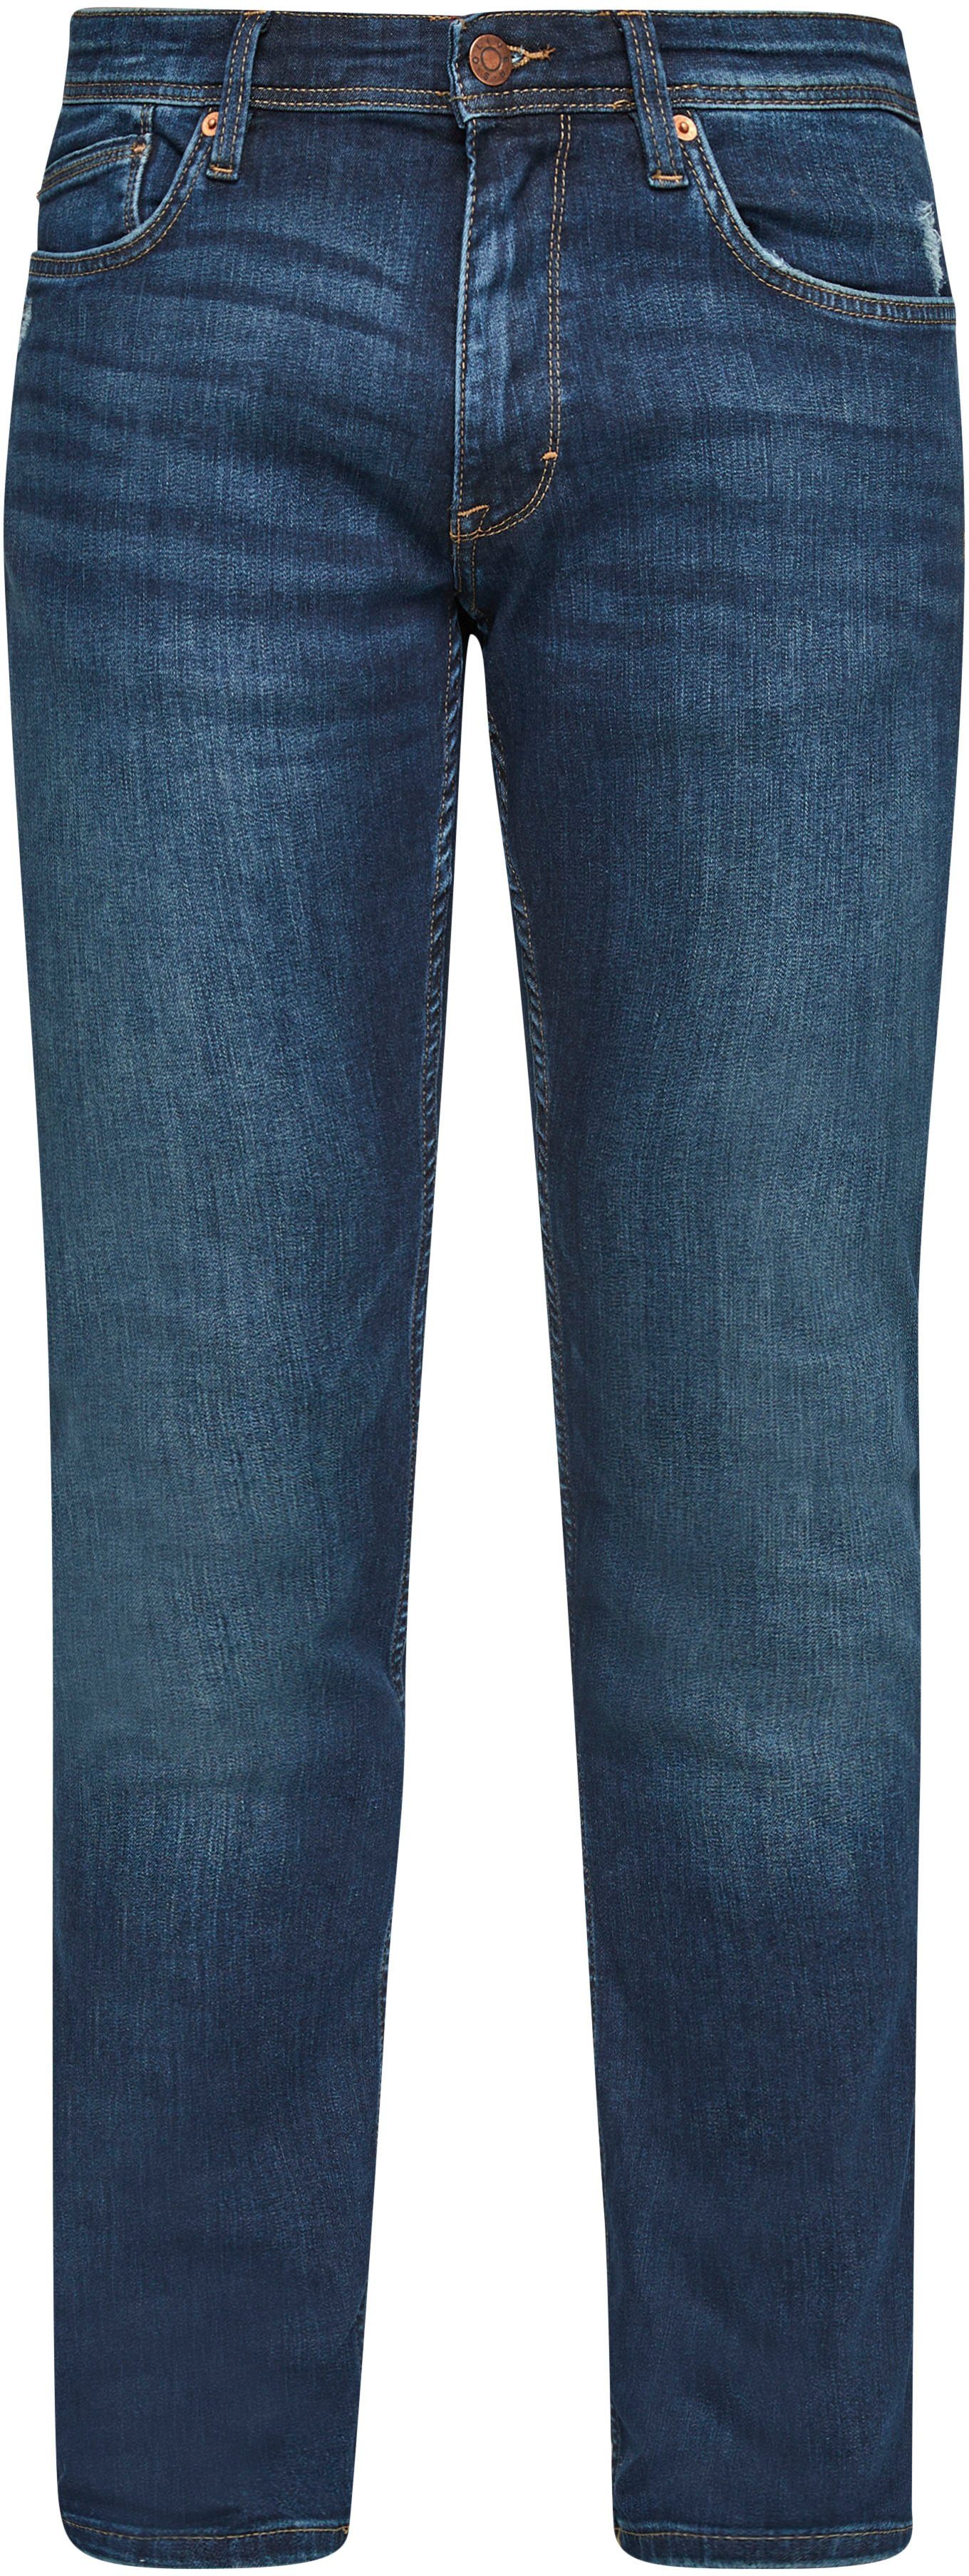 Bequeme mit s.Oliver und Eingrifftaschen Jeans dark Gesäß- blue